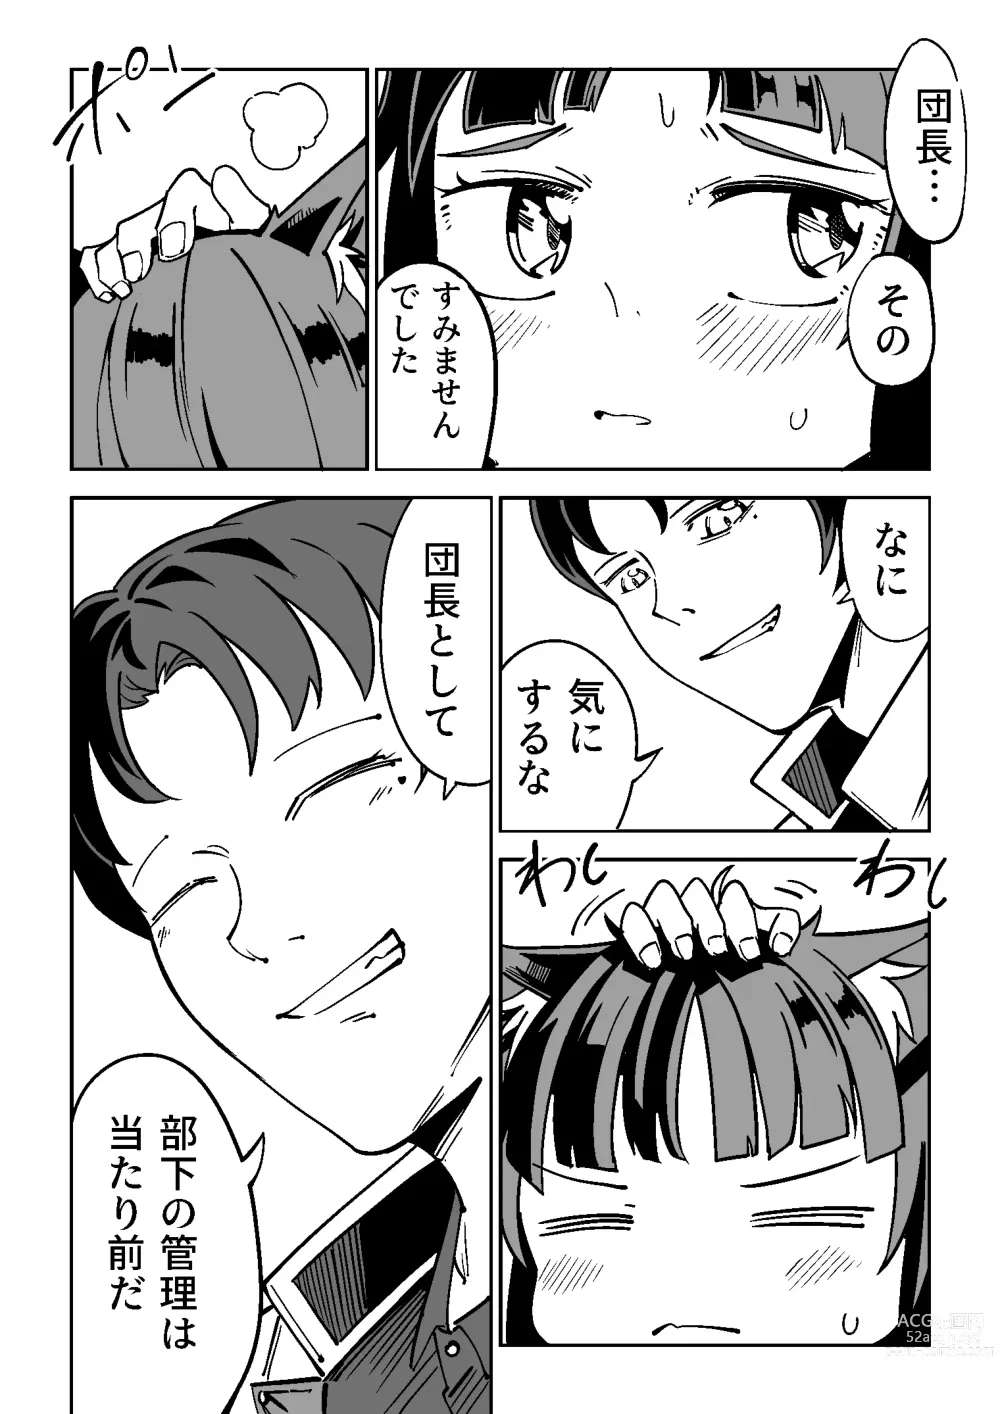 Page 24 of doujinshi NOID Episode:Julius